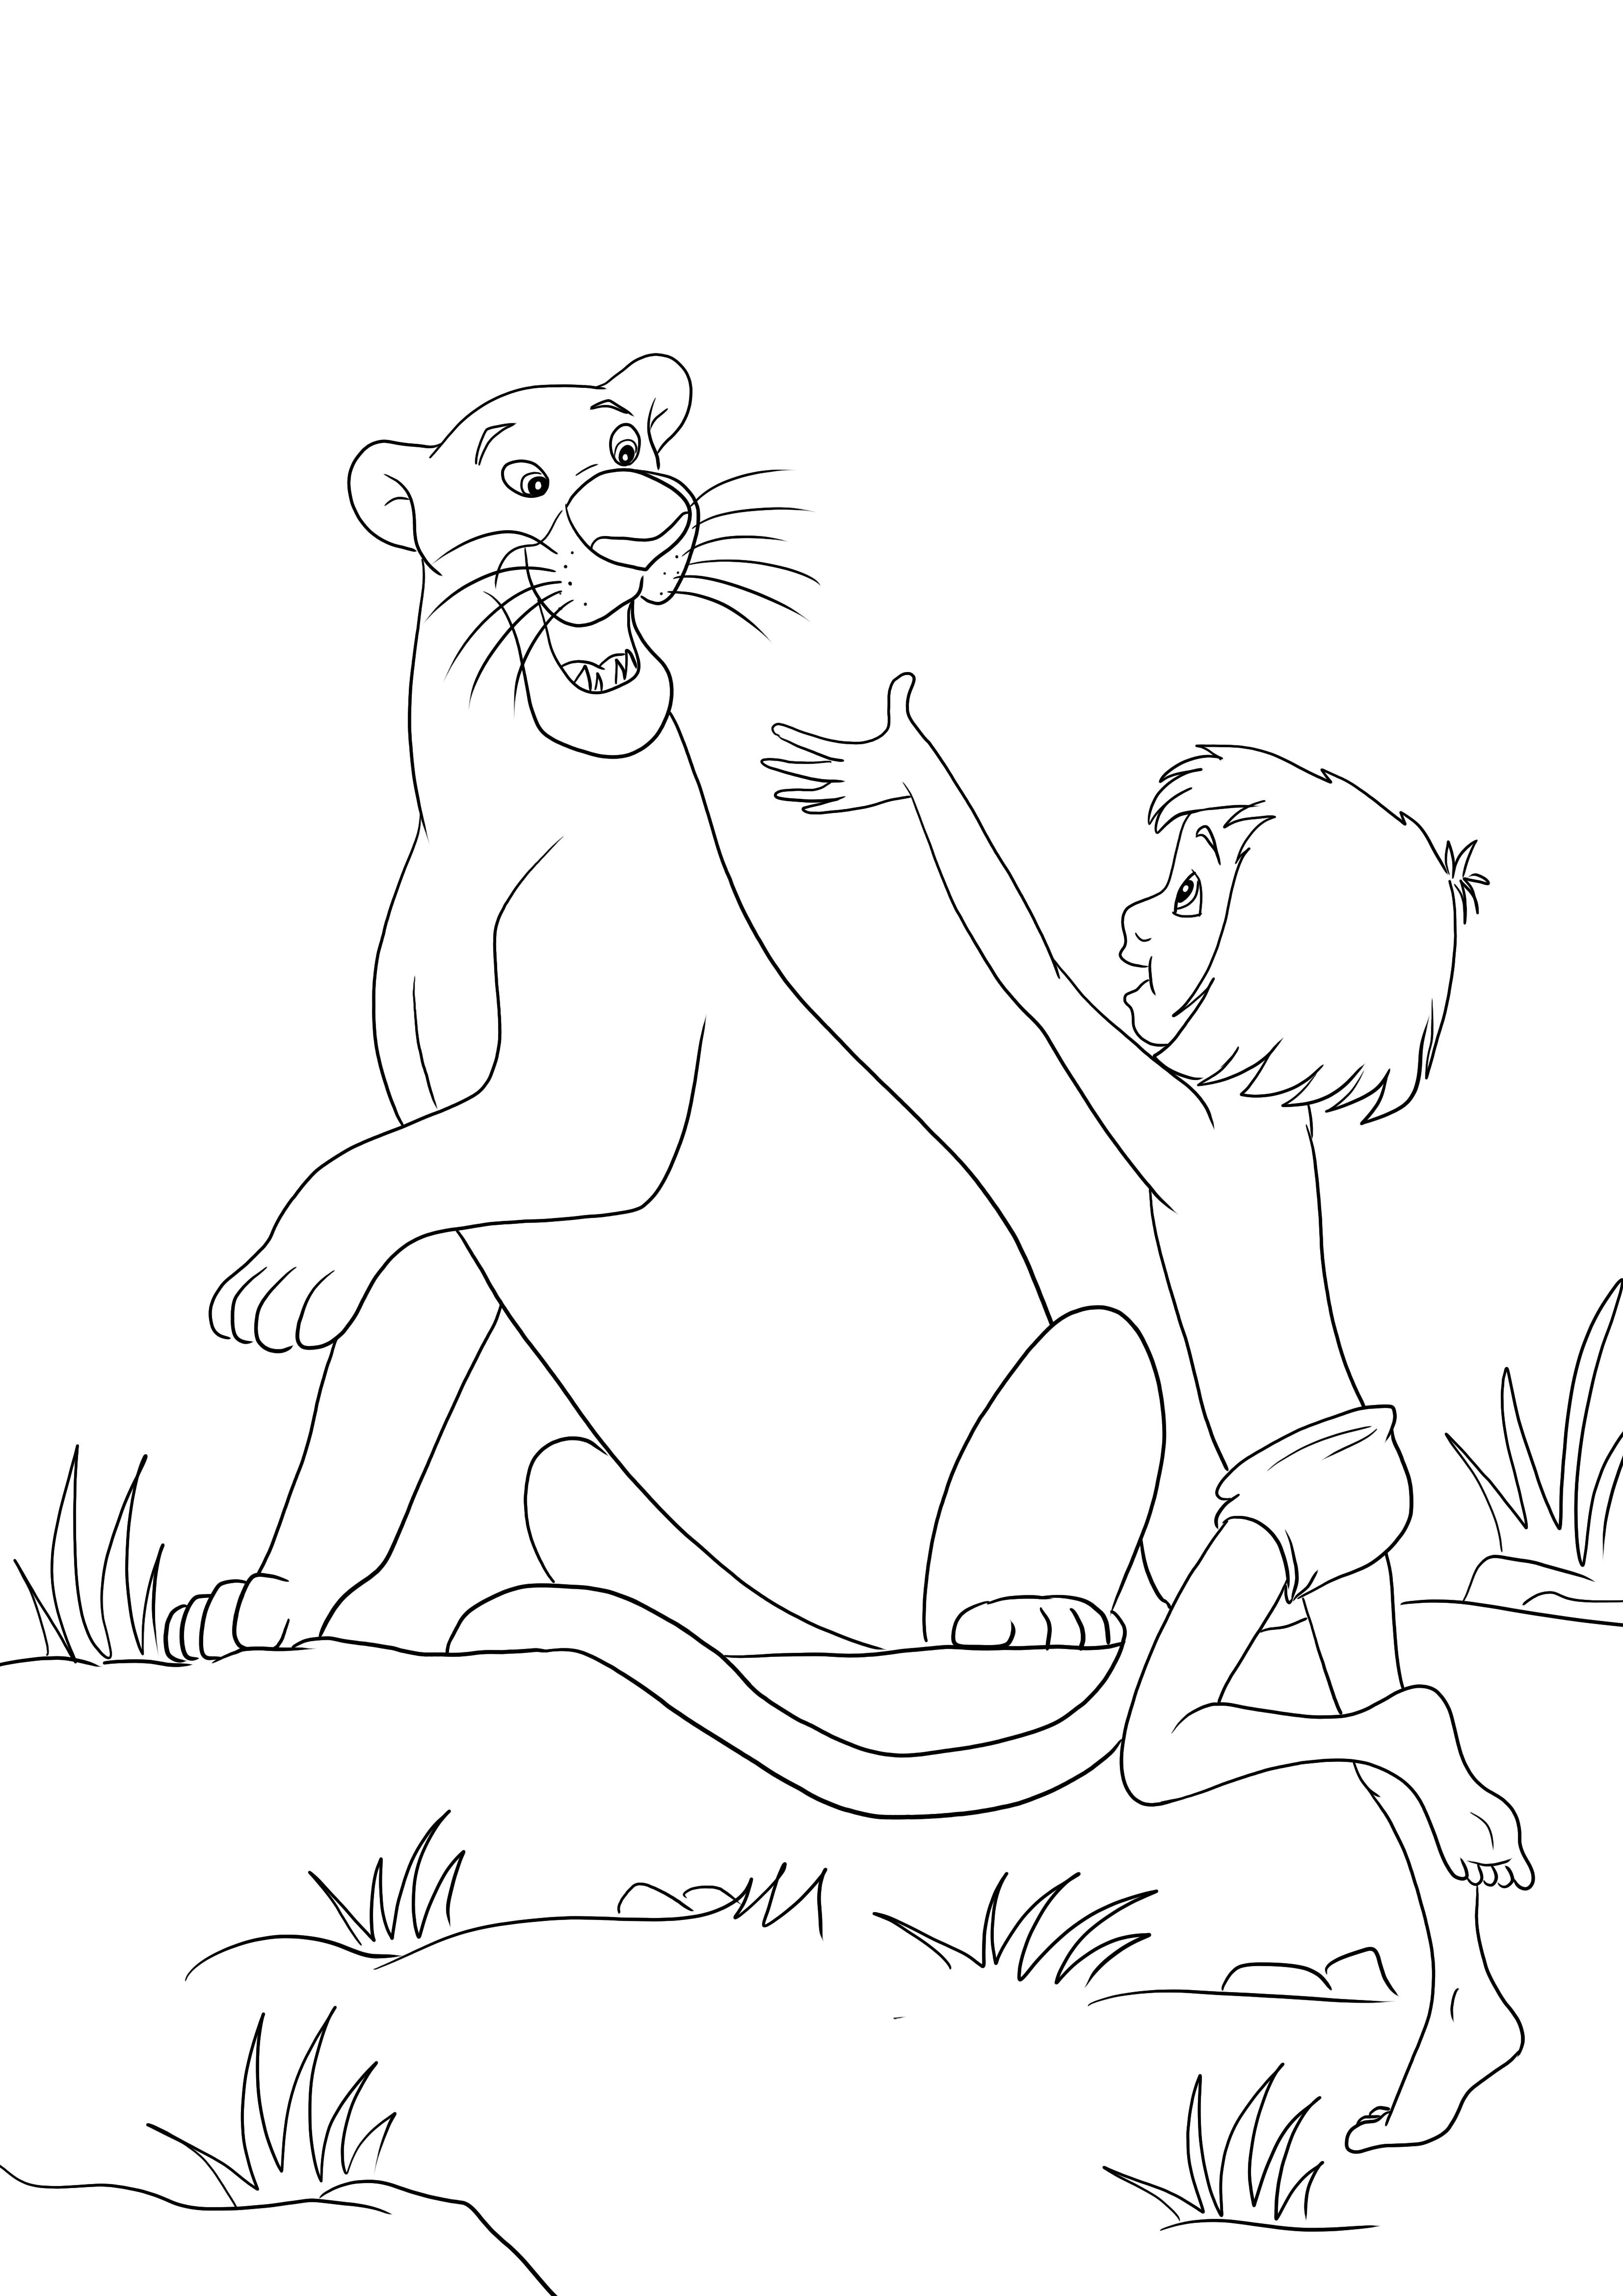 Mowgli e Bagheera estão felizes juntos - imagem gratuita para colorir e baixar